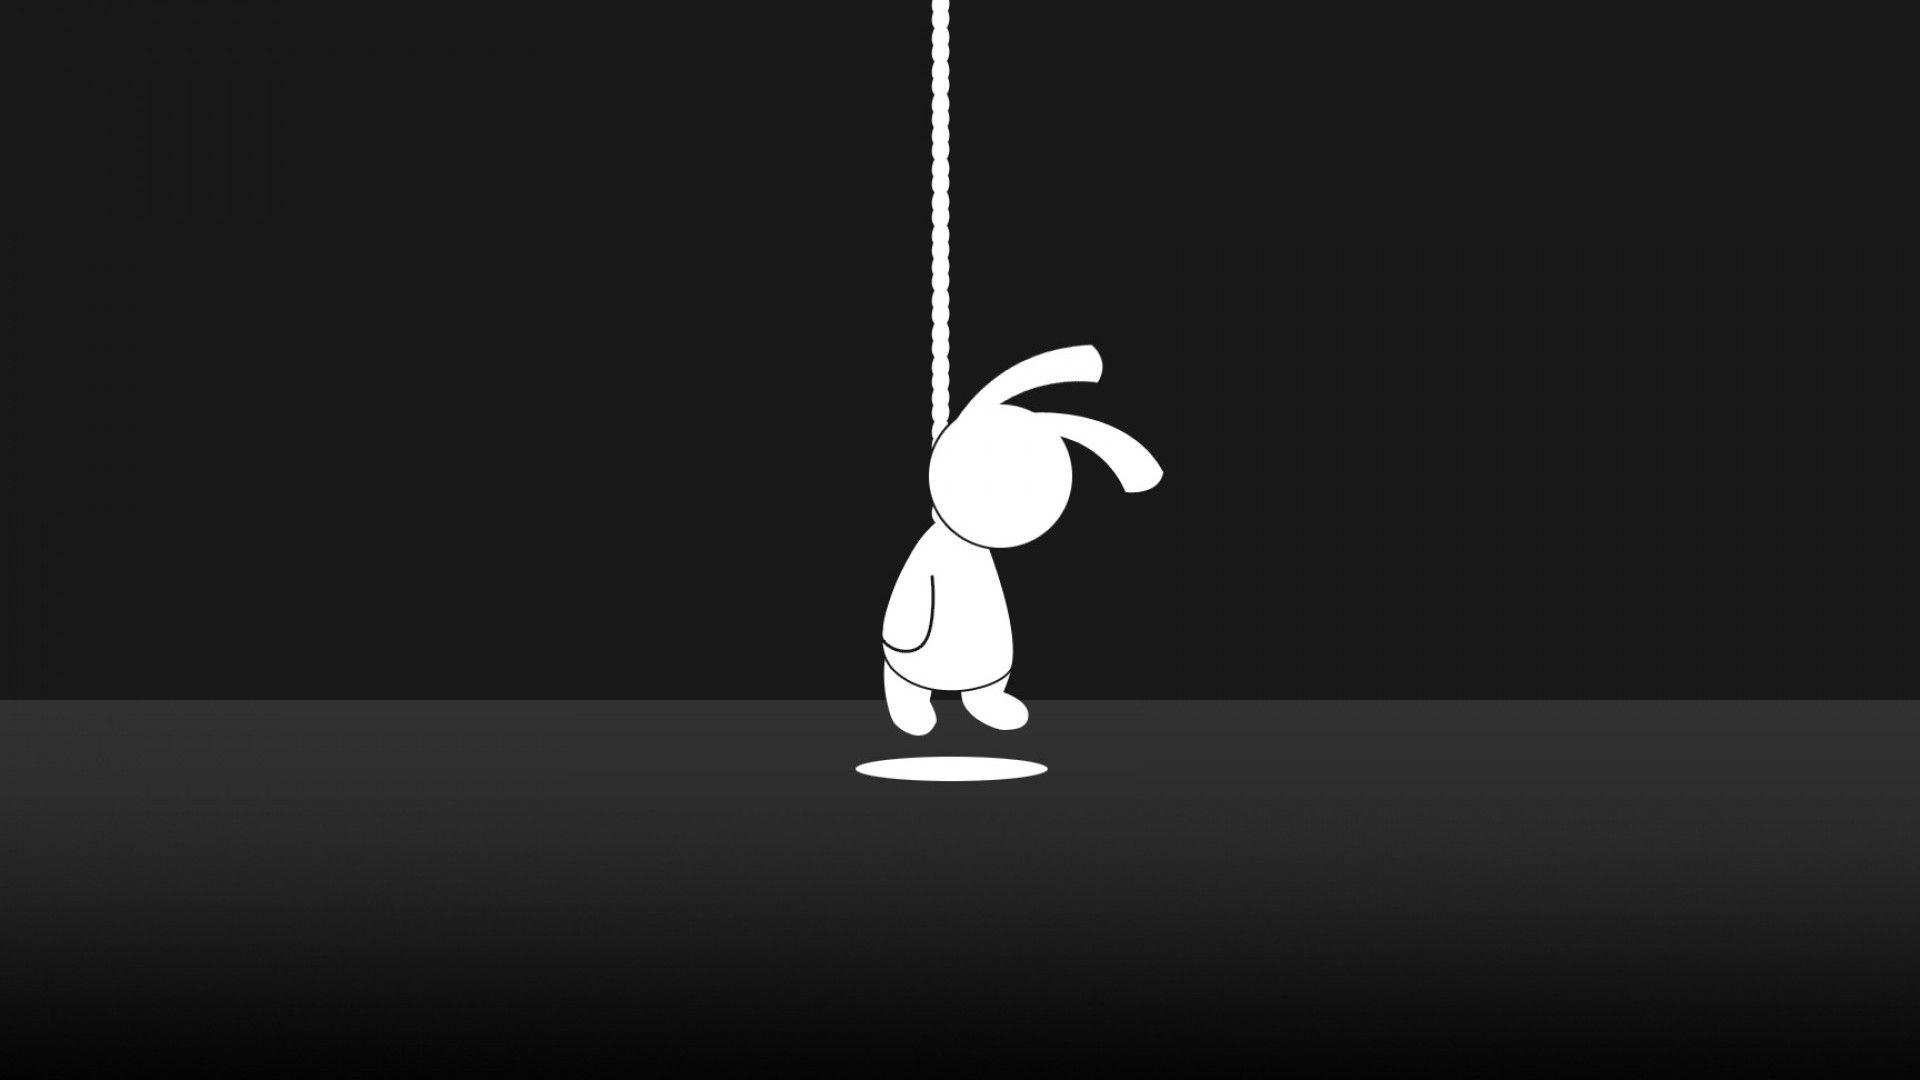 Download 1920x1080 Suicide Bunny Wallpaper for Desktop